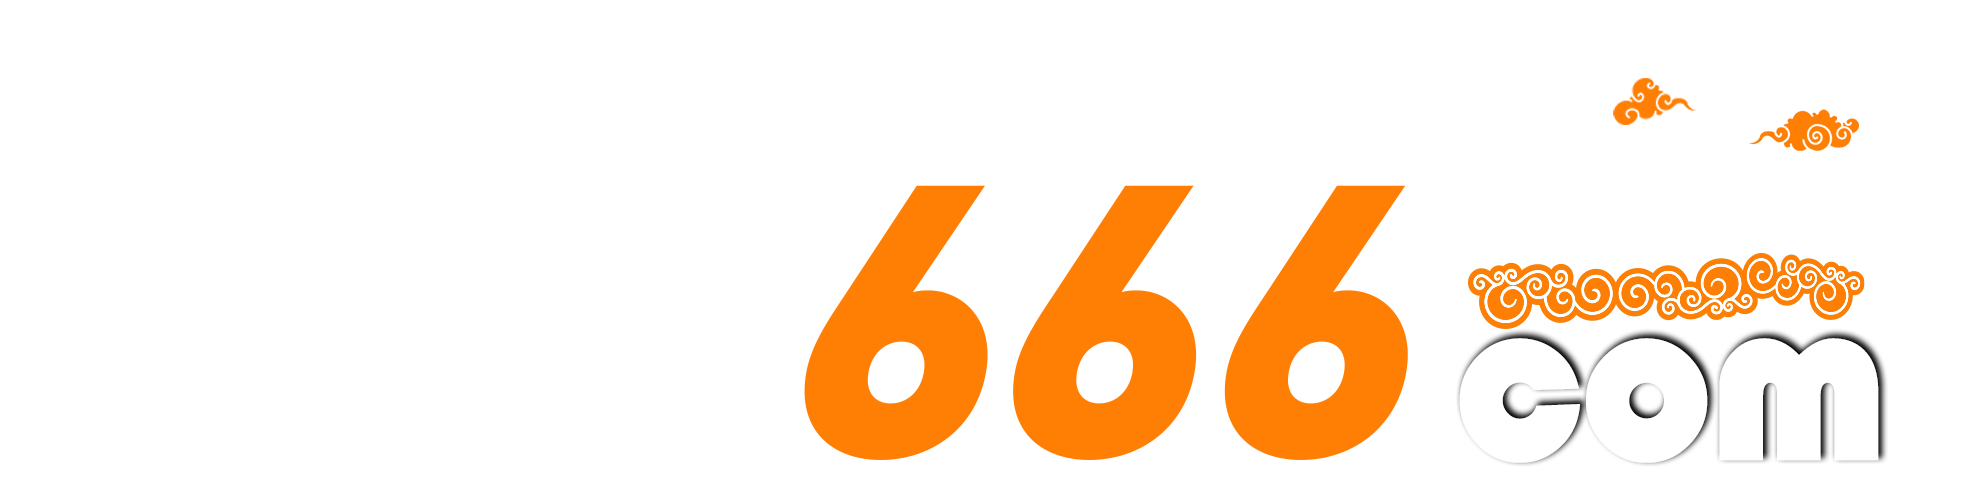 S666.com – Nhà cái cá cược trực tuyến được đánh giá cao